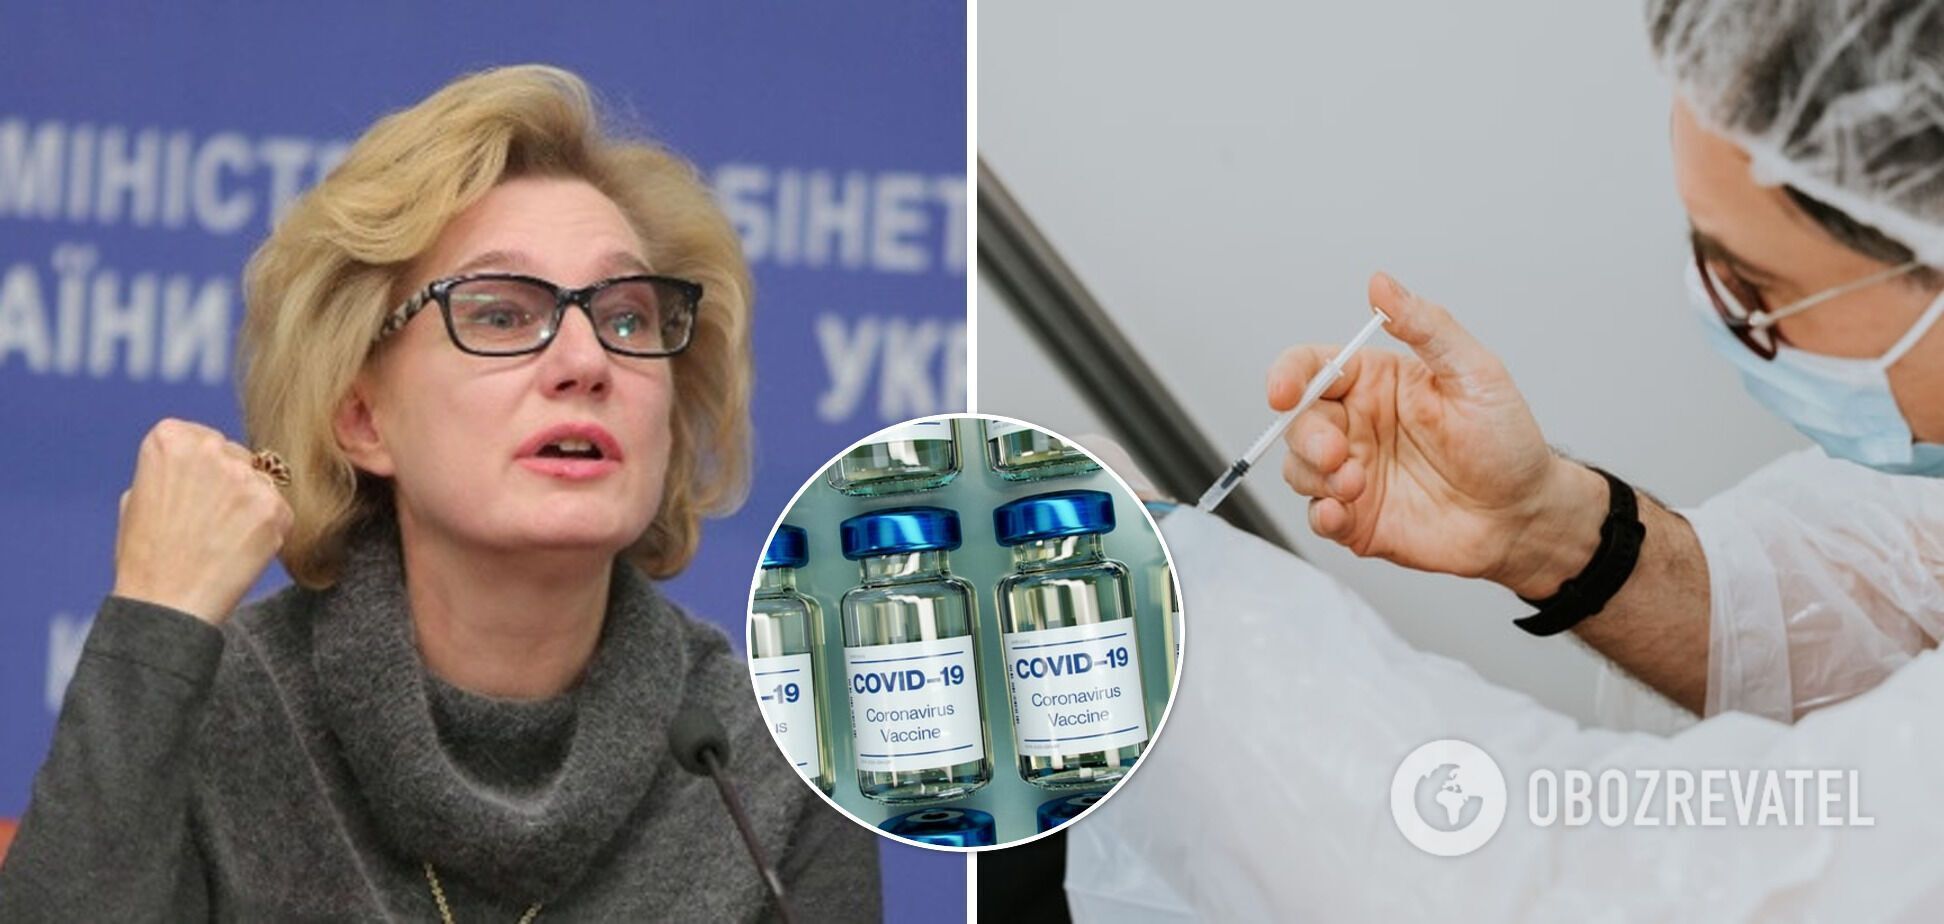 Додаткова доза потрібна лише тим людям, які мають імунодефіцит, – сказала Голубовська.